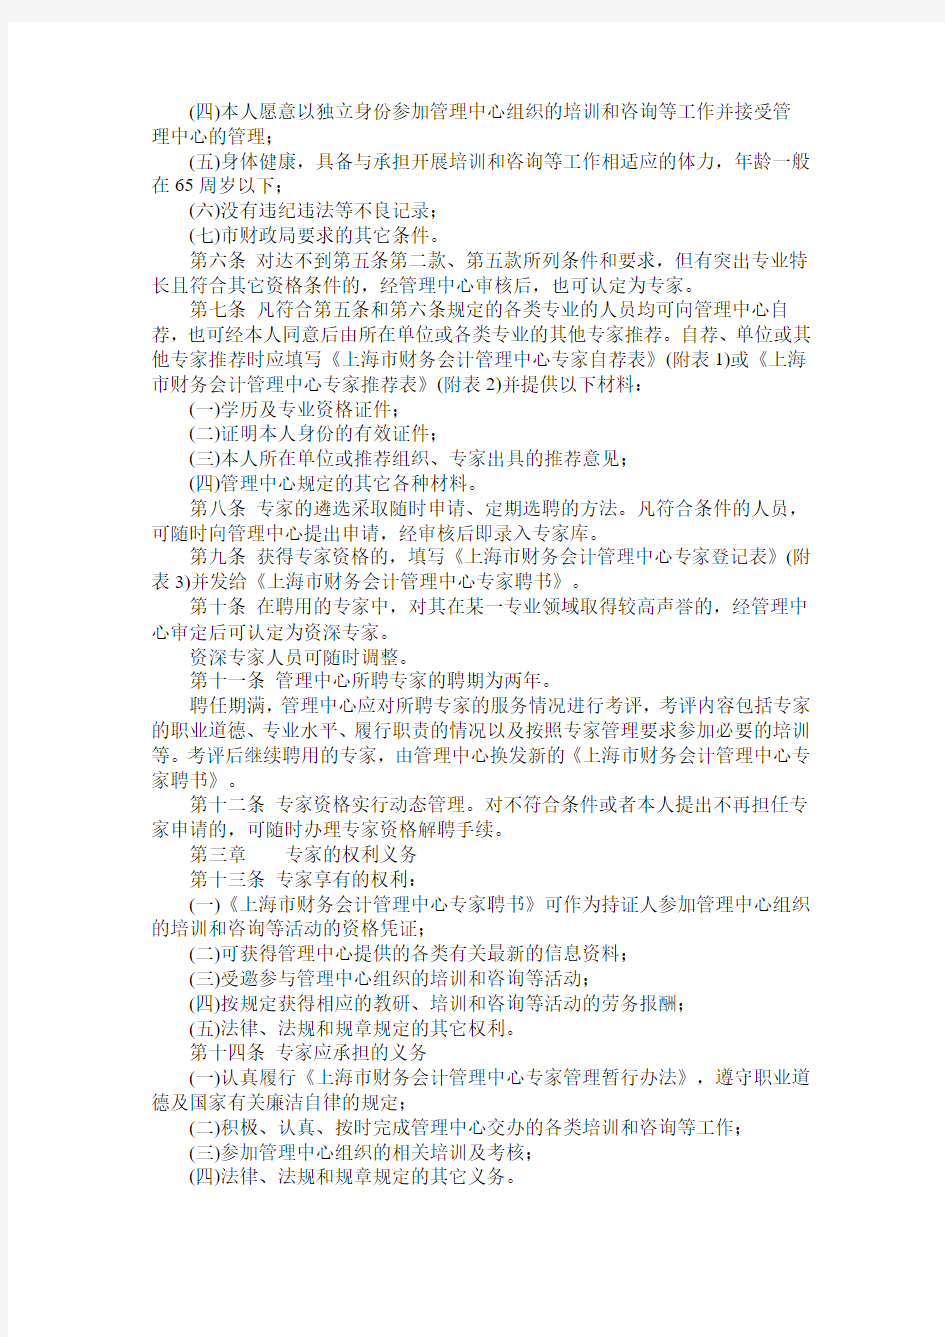 上海市财政局关于印发《上海市财务会计管理中心专家管理暂行办法》的通知